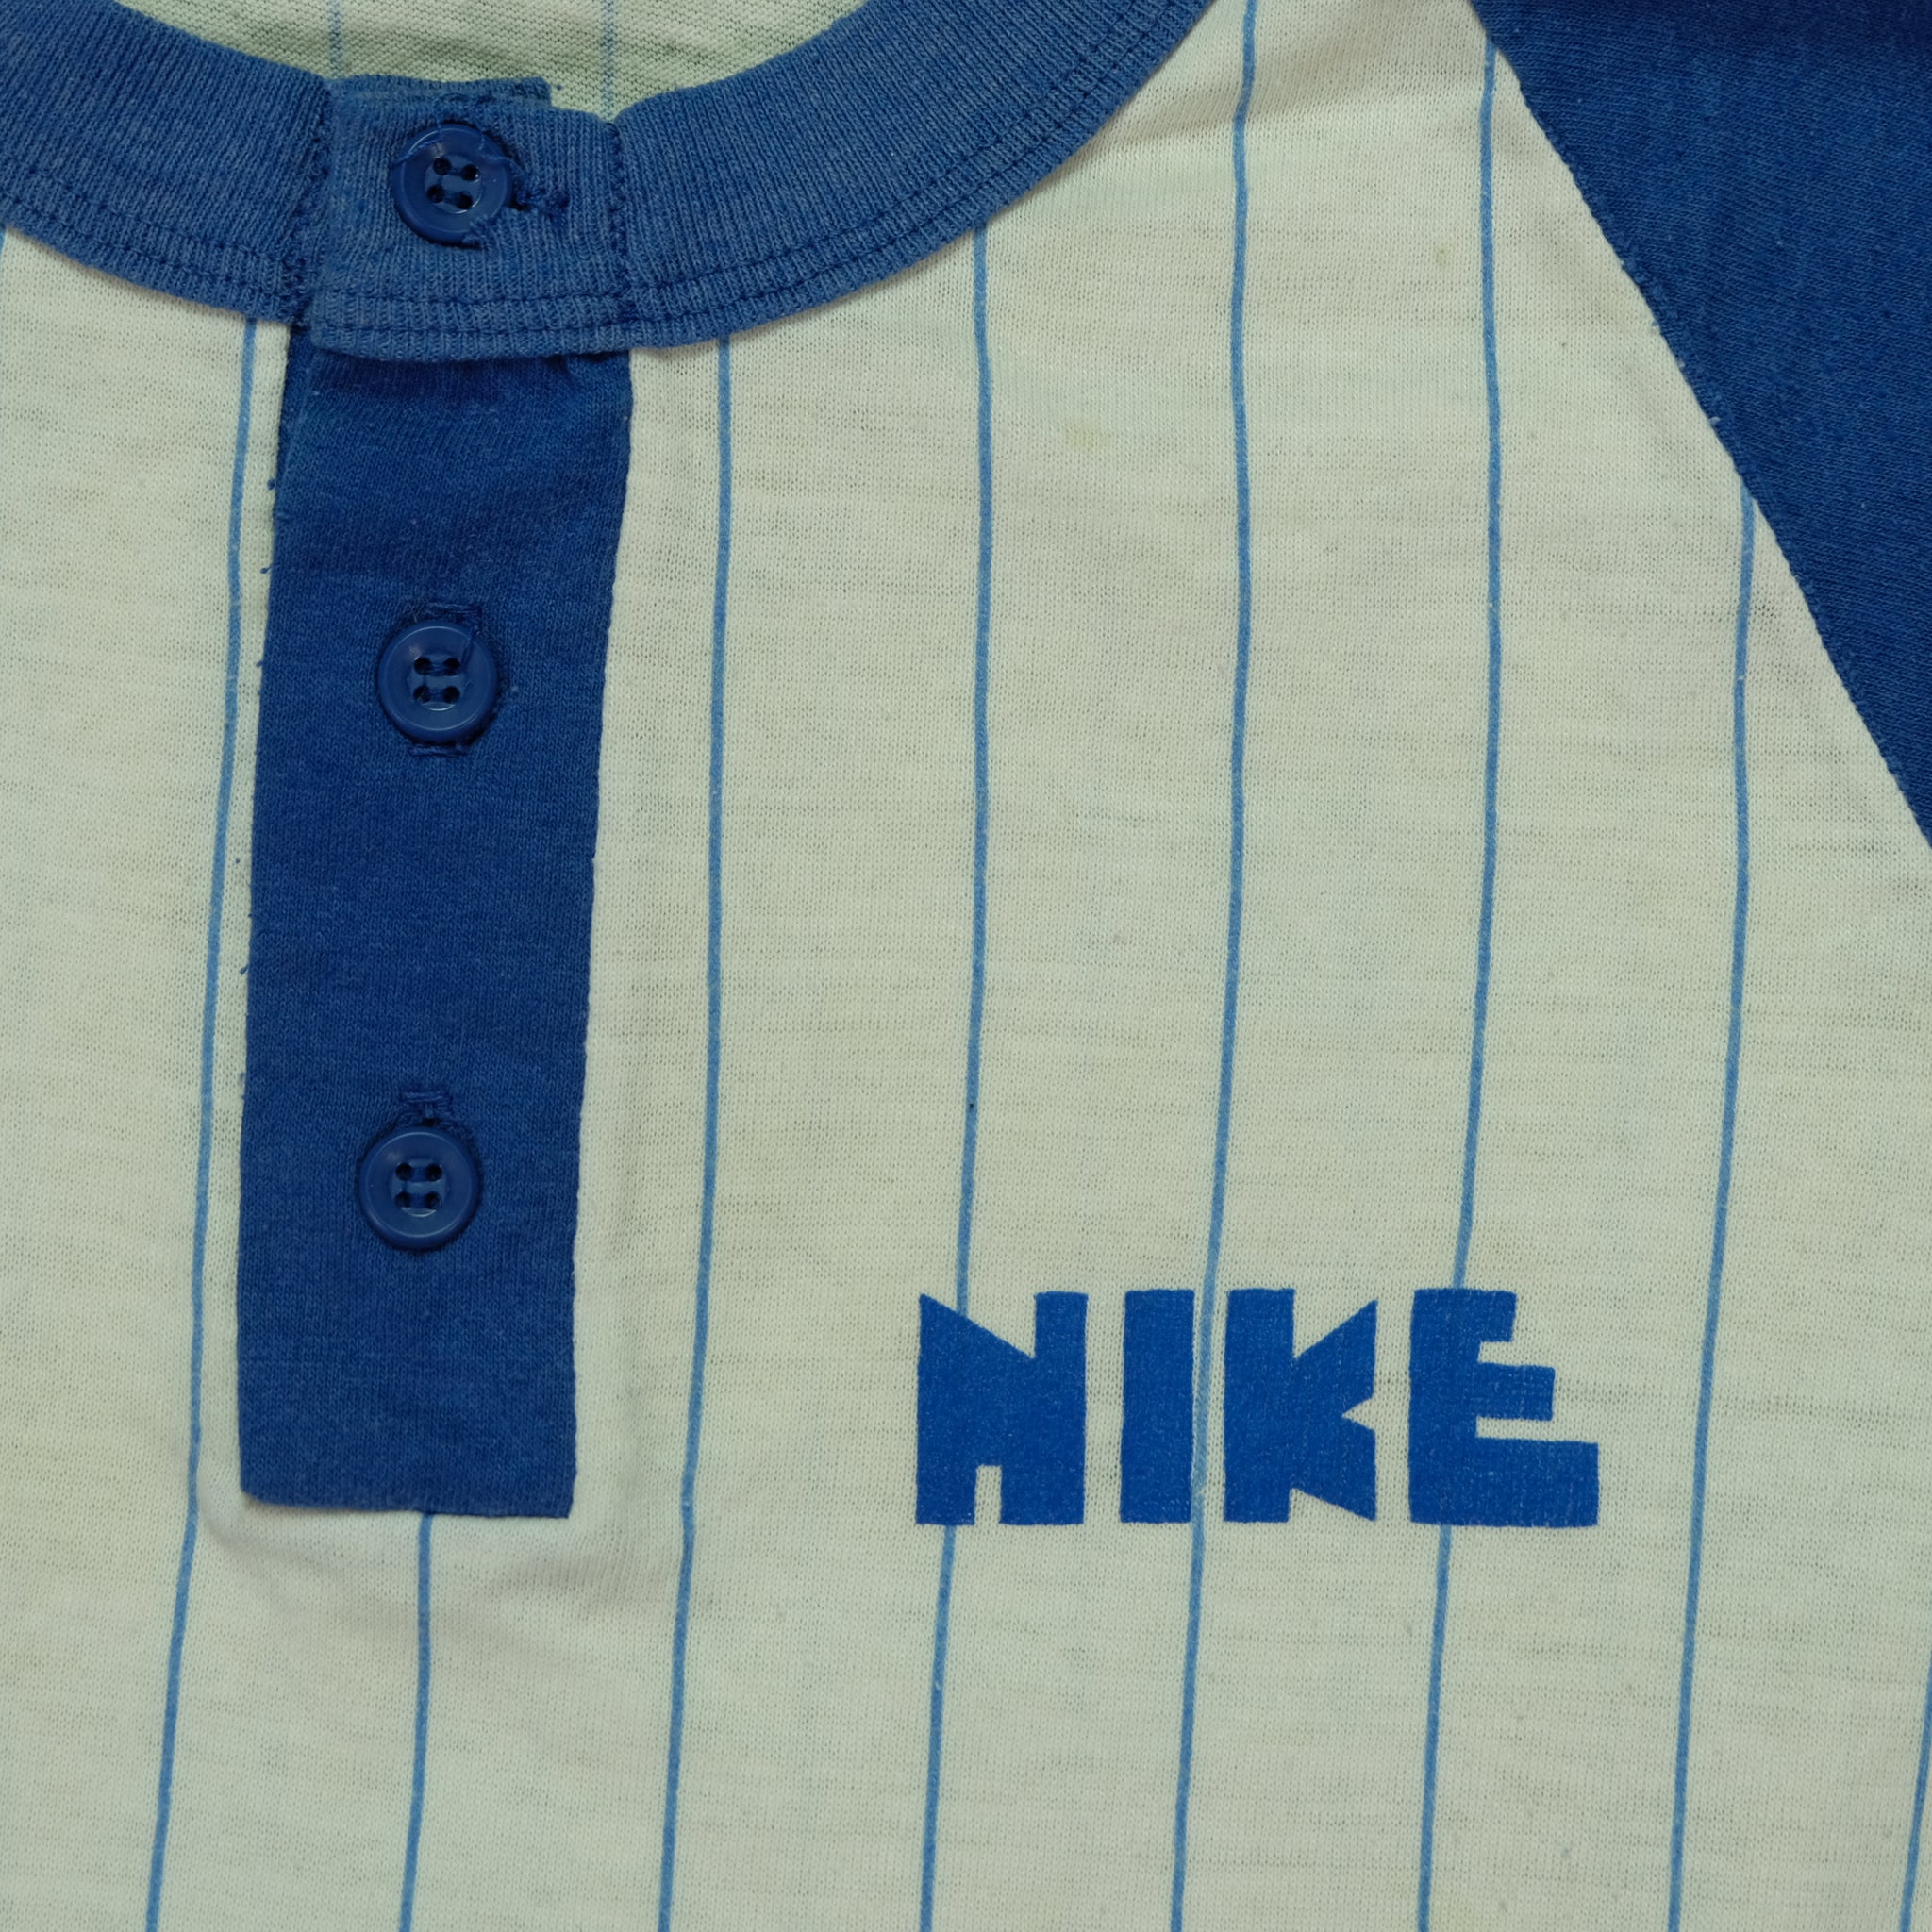 Vintage Nike Sportswear Block Letters Pinstriped Henley Tee